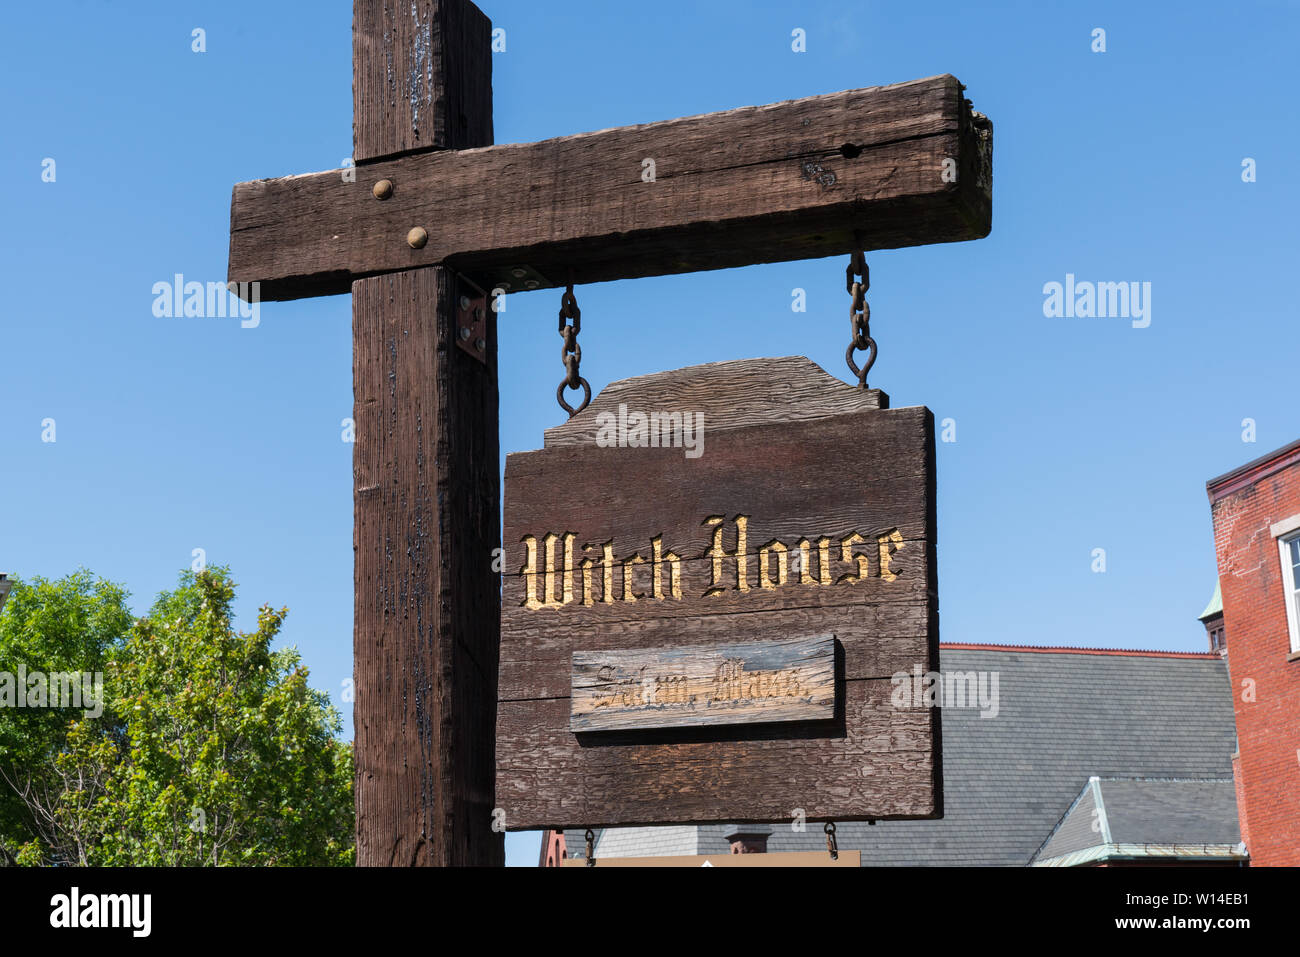 Salem, MA - Juni 8, 2019: Zeichen an der Salem Witch House, der Heimat der Richter Jonathan Corwin, die über die Salem Witch Trials 1692 Vorsitz Stockfoto